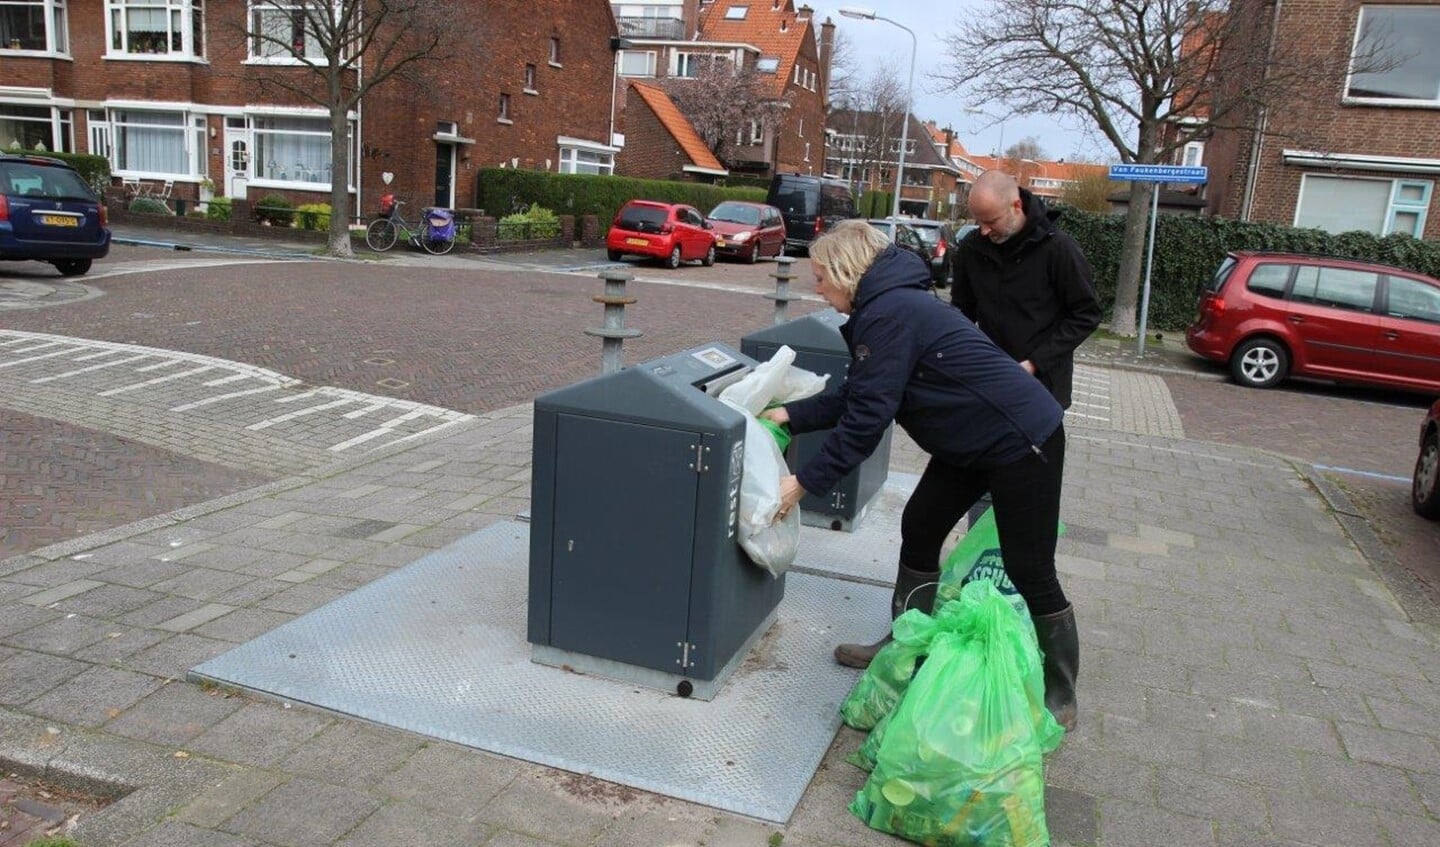 Wethouder Van Eekelen propt de zakken met zwerfafval in de container (foto: Ap de Heus).